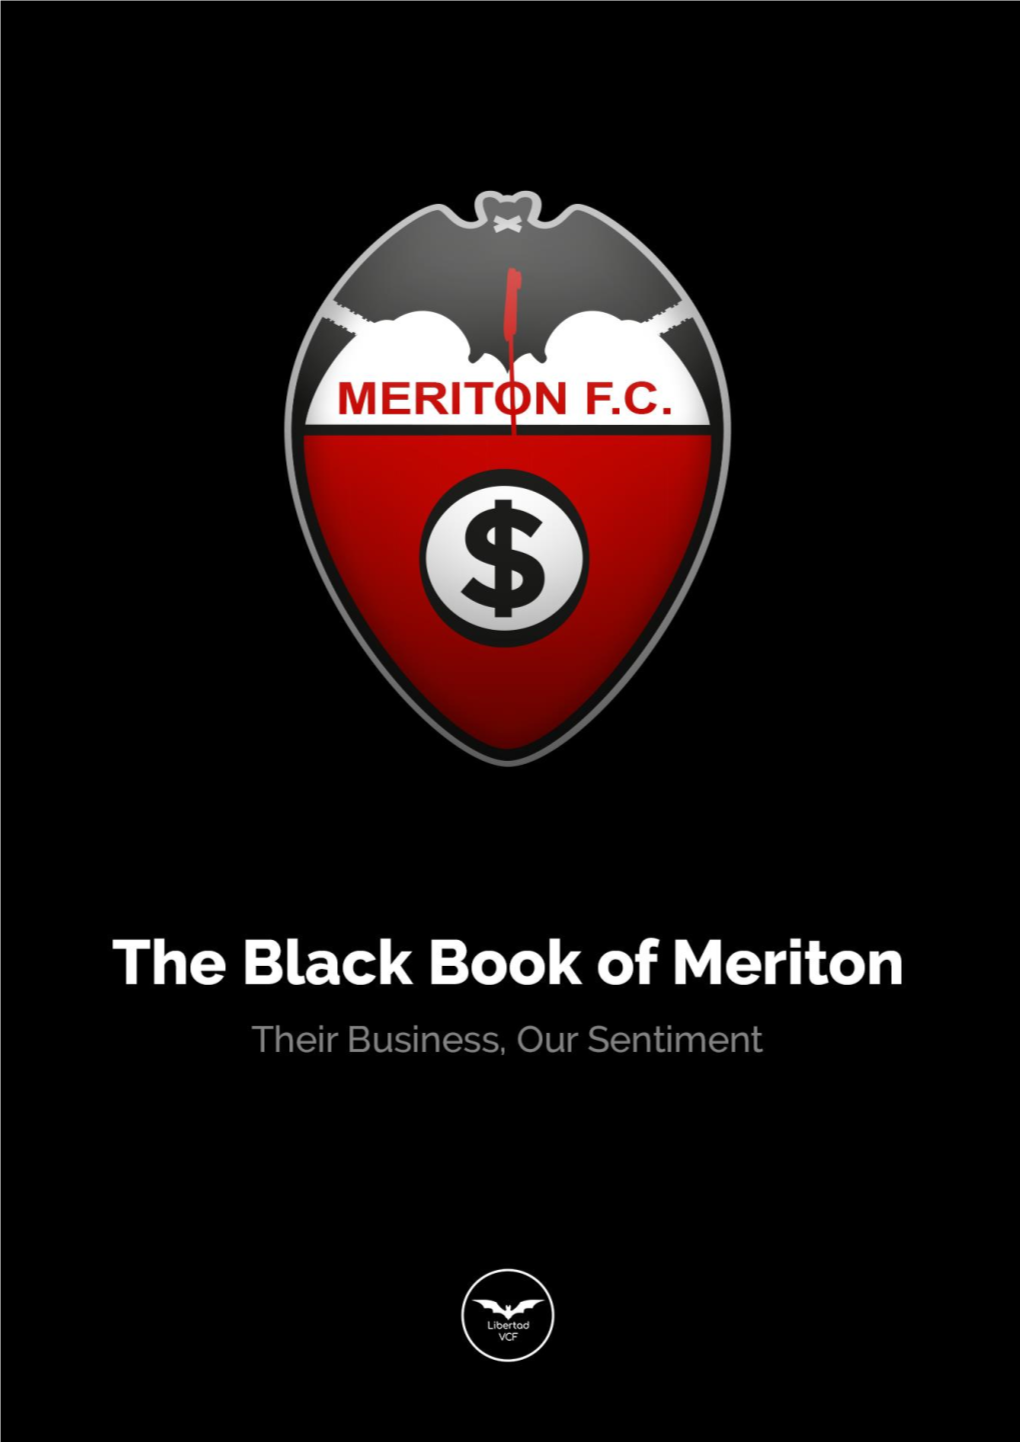 The Black Book of Meriton